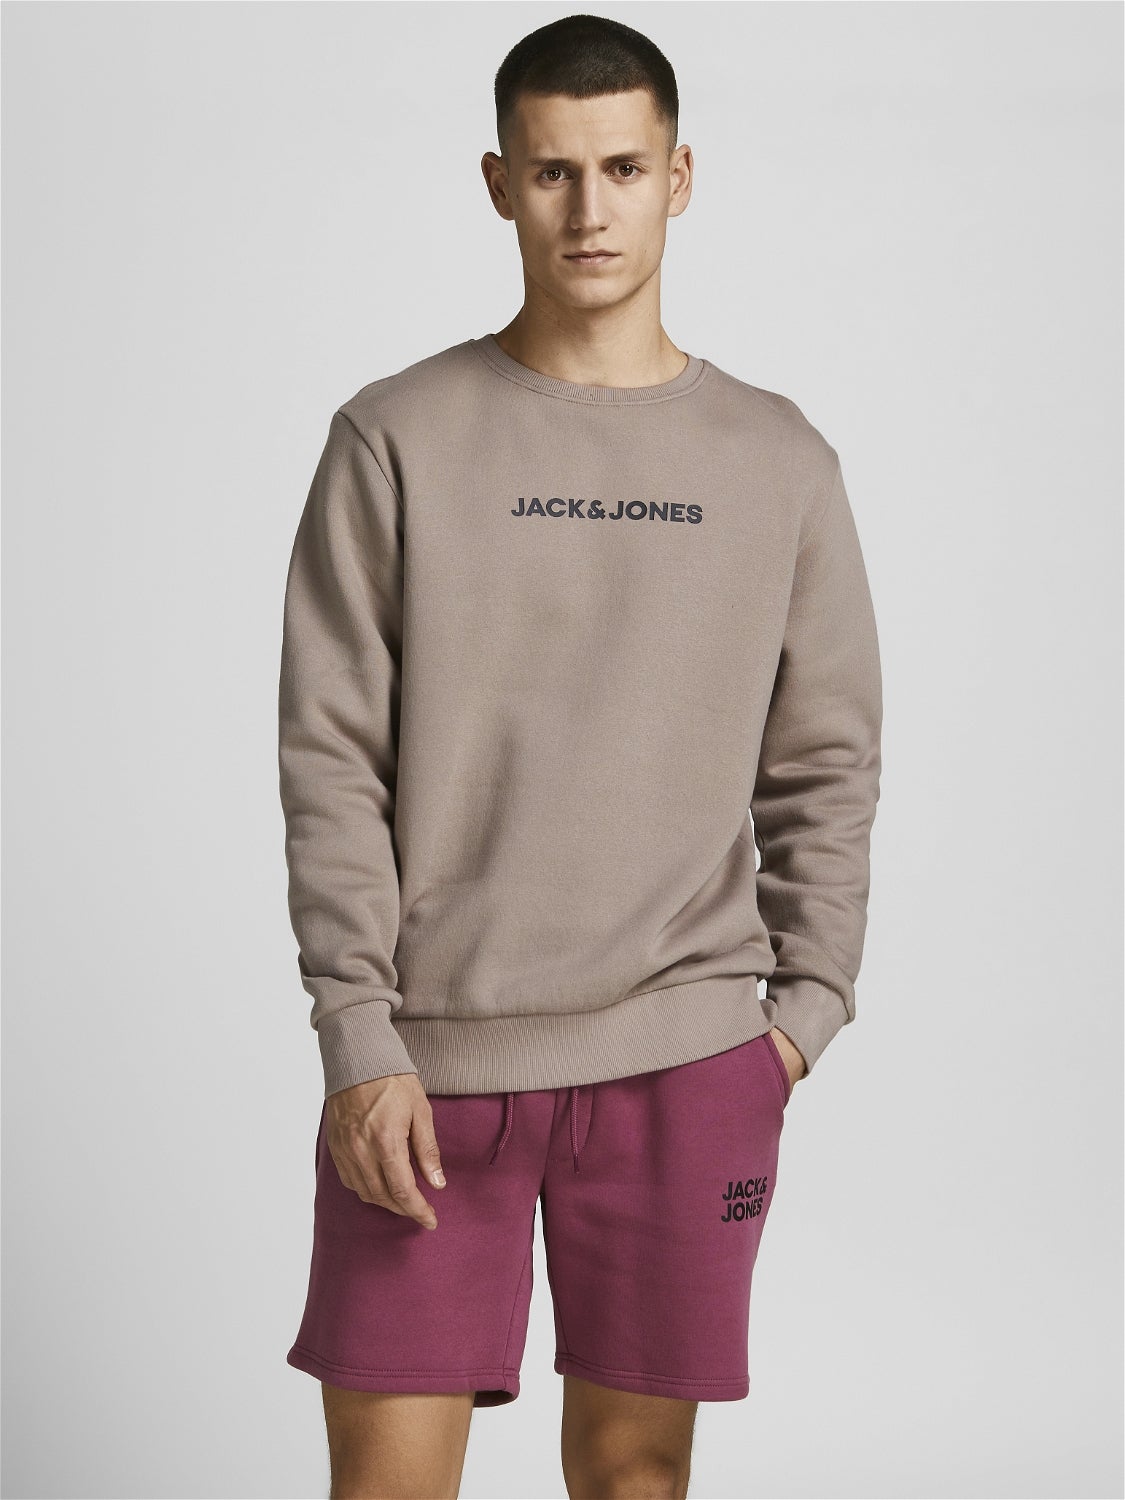 HERREN Pullovers & Sweatshirts Ohne Kapuze Rot L Jack & Jones sweatshirt Rabatt 56 % 